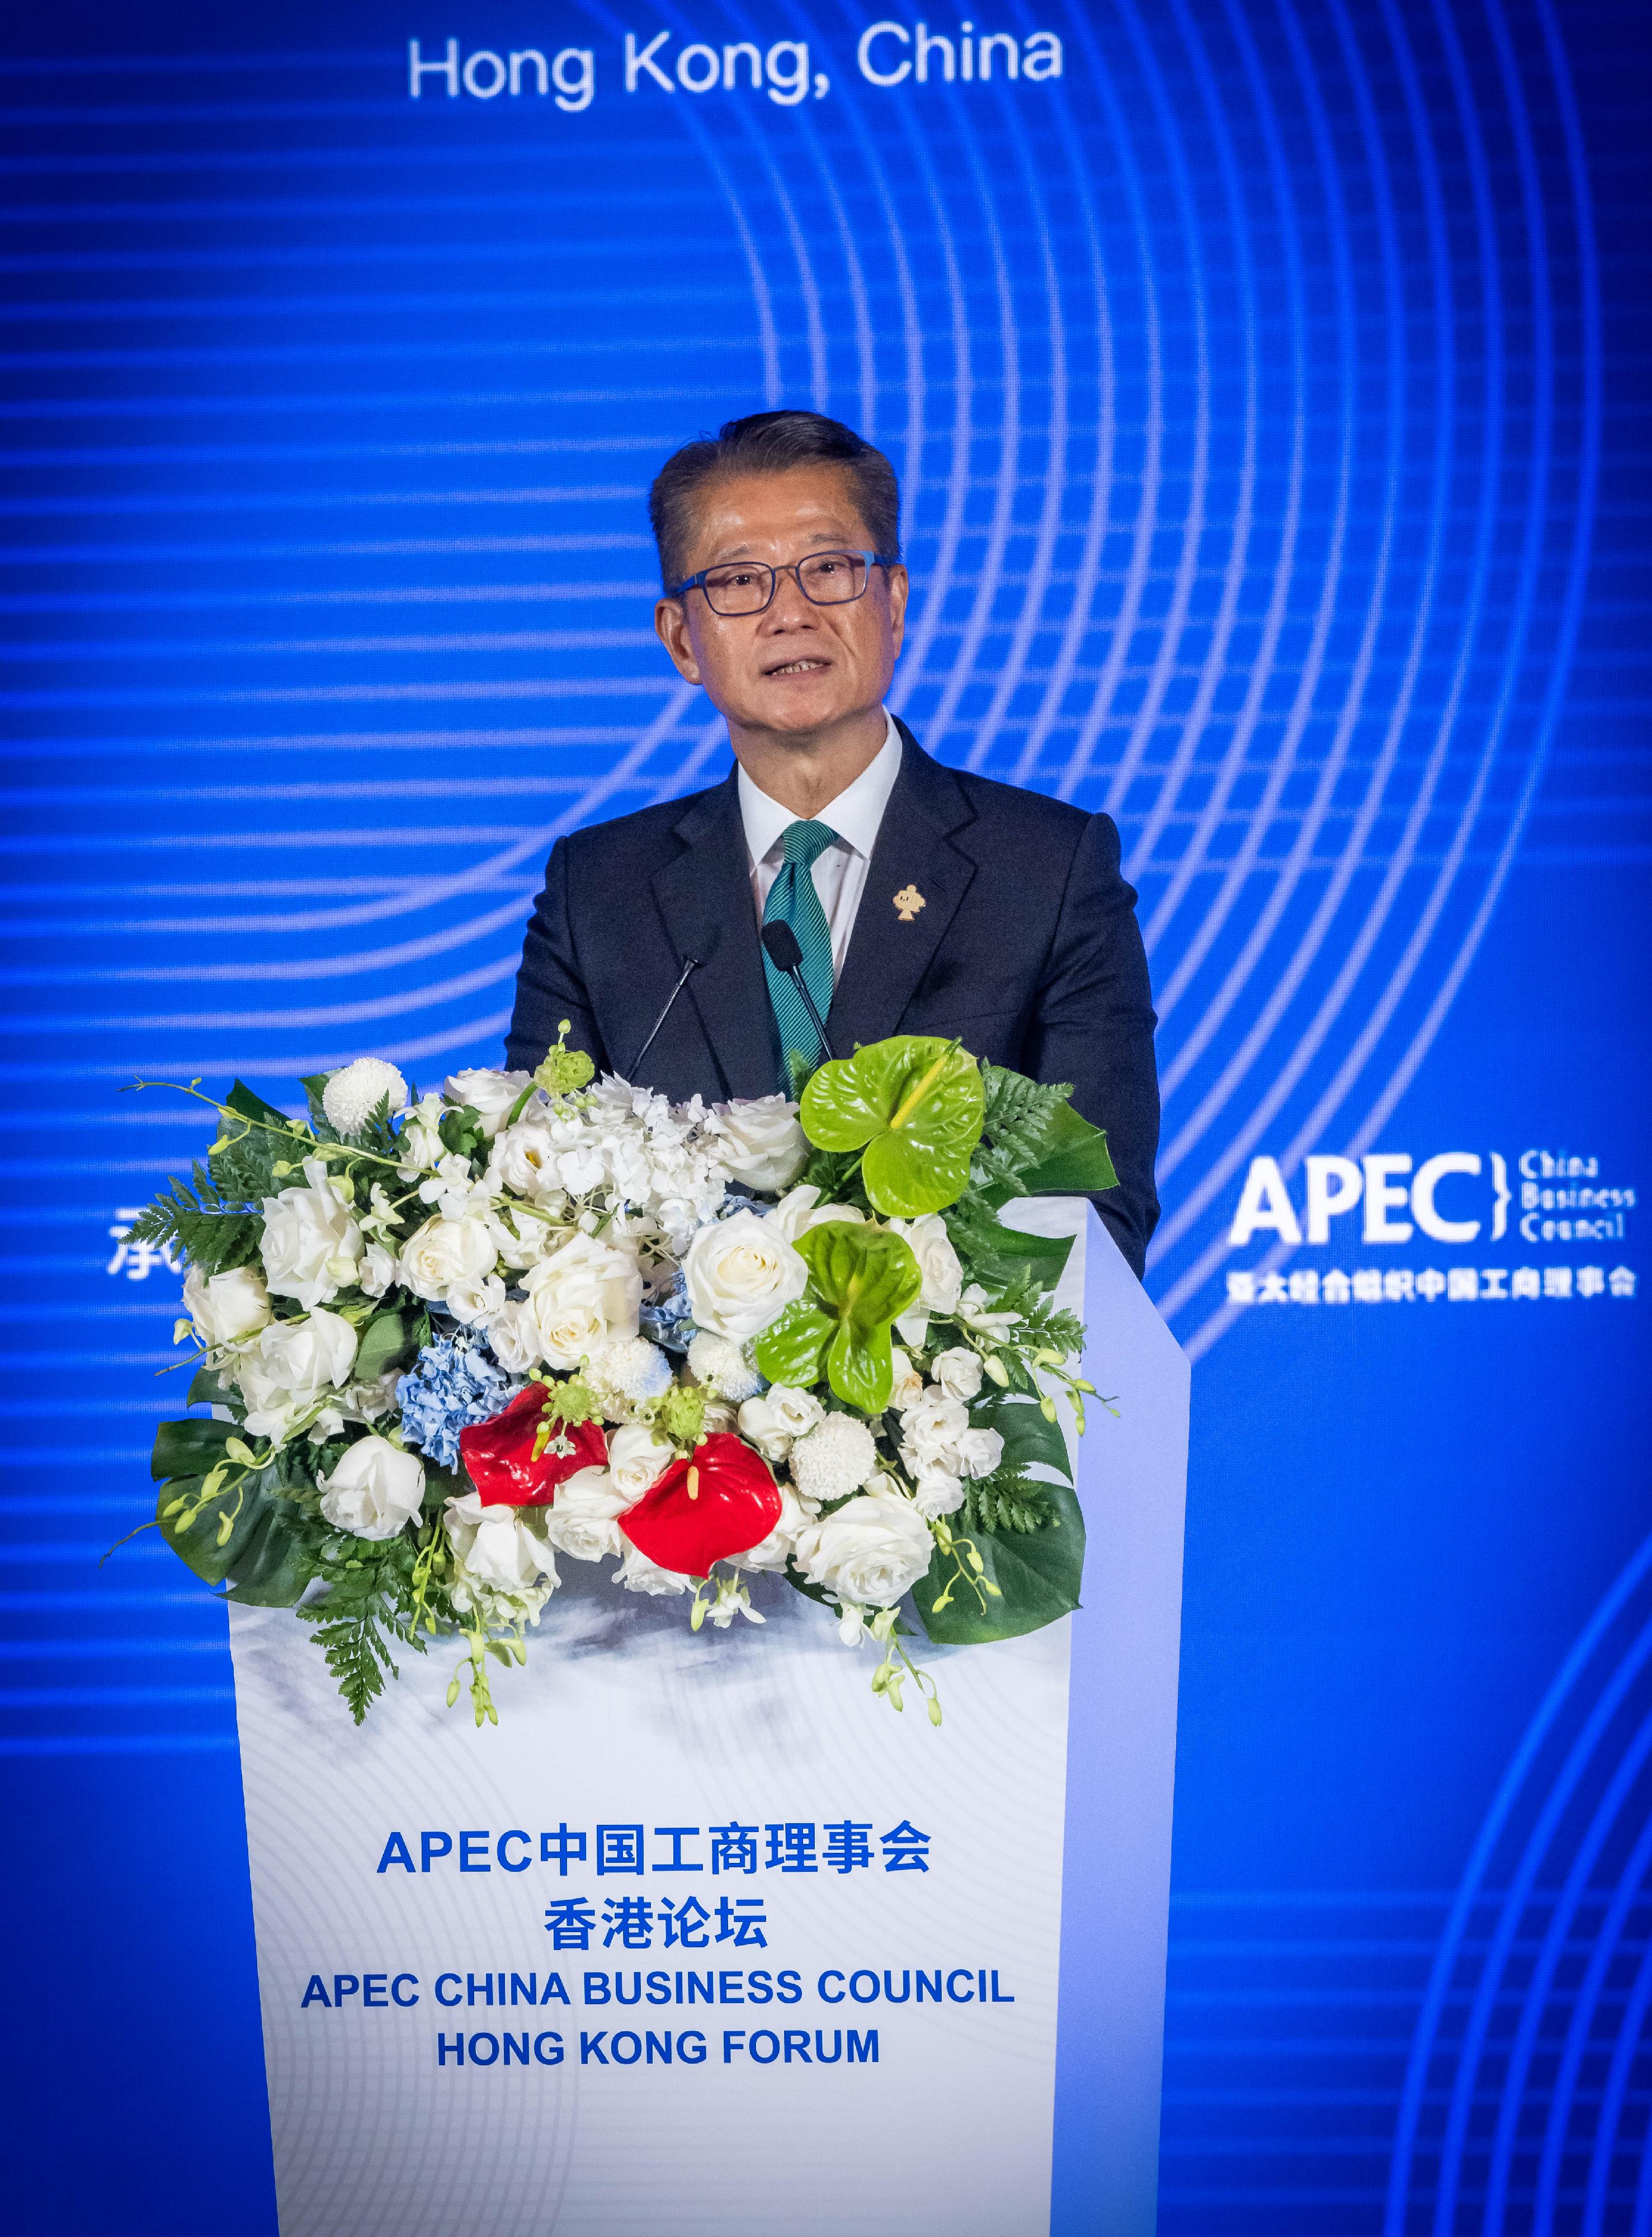 財政司司長陳茂波今日（四月二十二日）在APEC中國工商理事會香港論壇開幕式致辭。